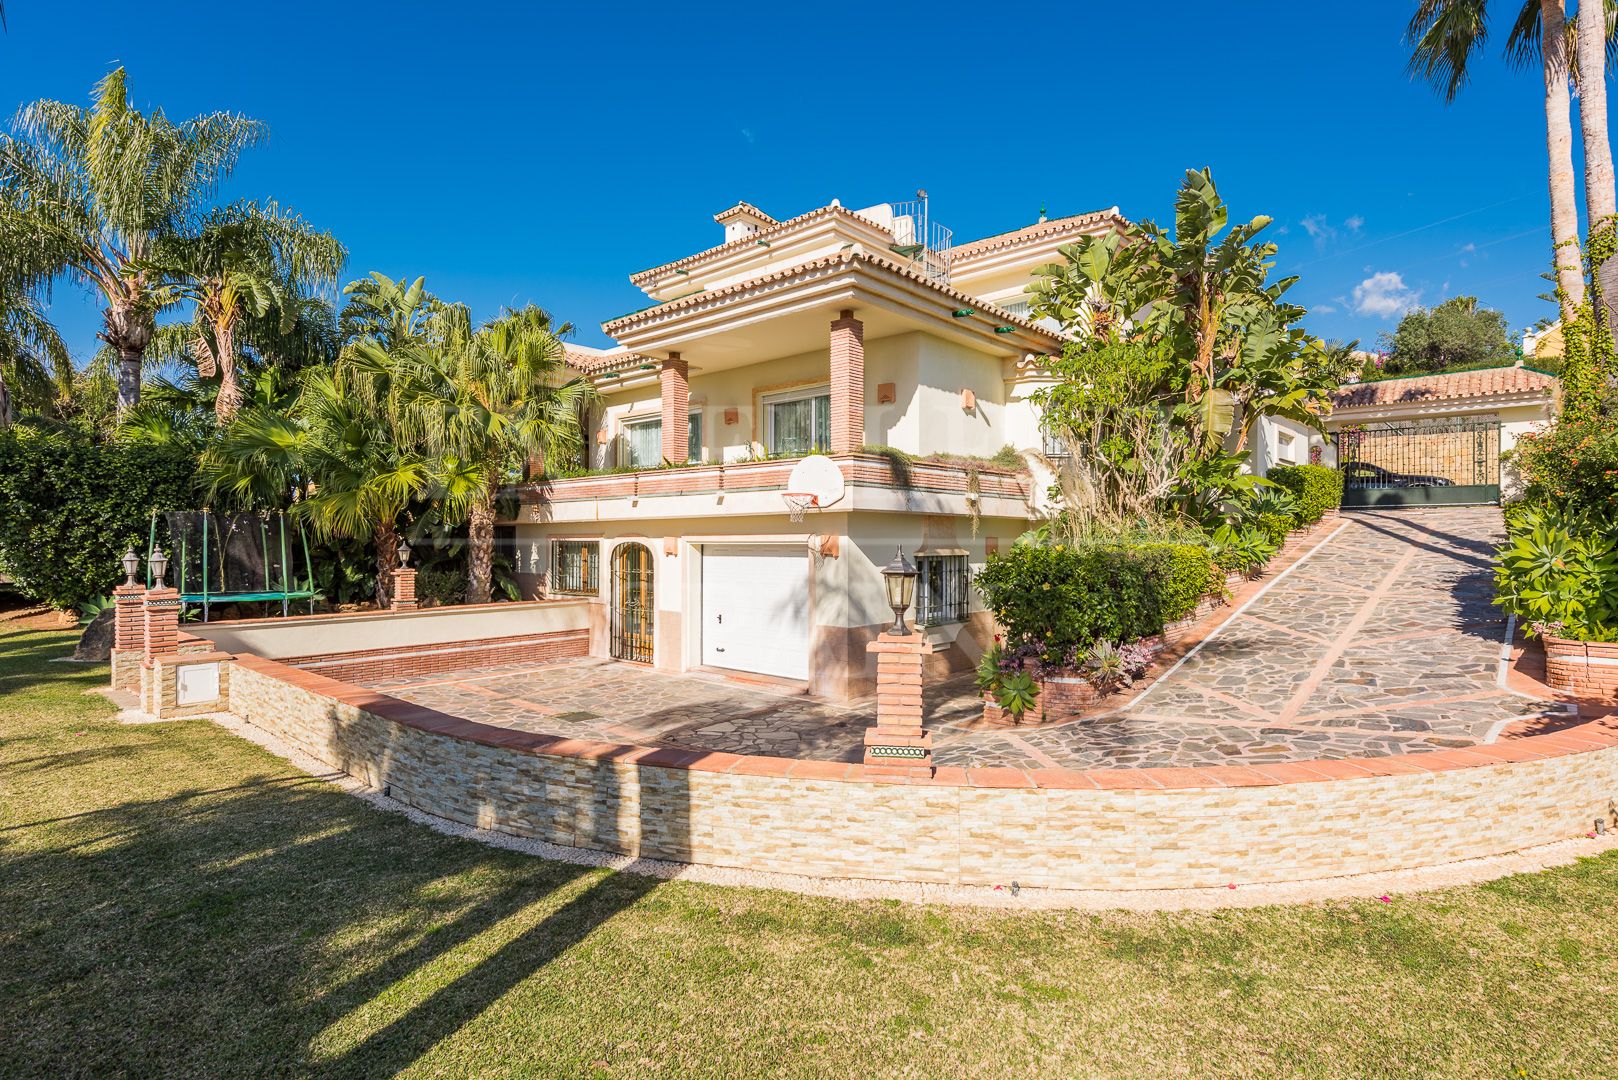 Villa for sale in El Paraiso, Estepona, walking to amenities